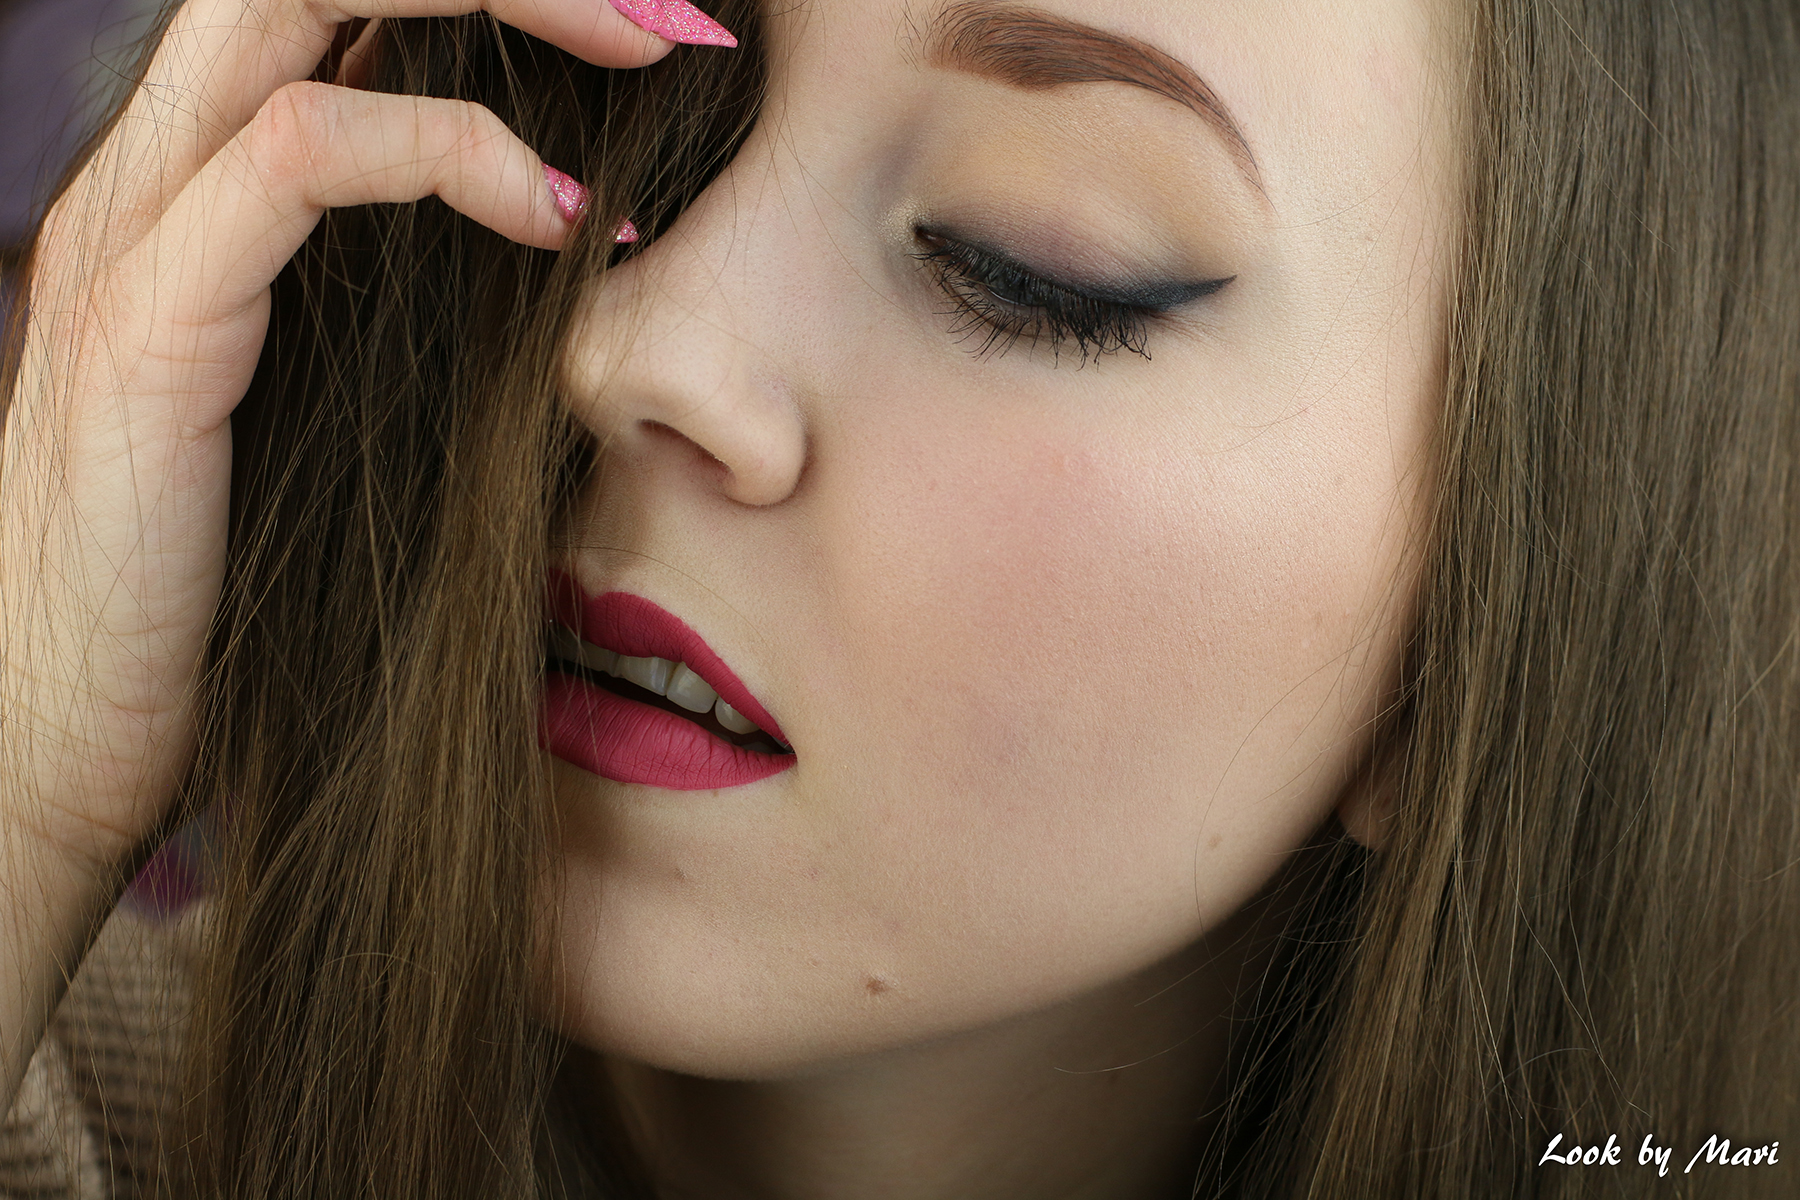 2 smoky eyeliner liner tutorial ideas makeup look simple easy for beginners